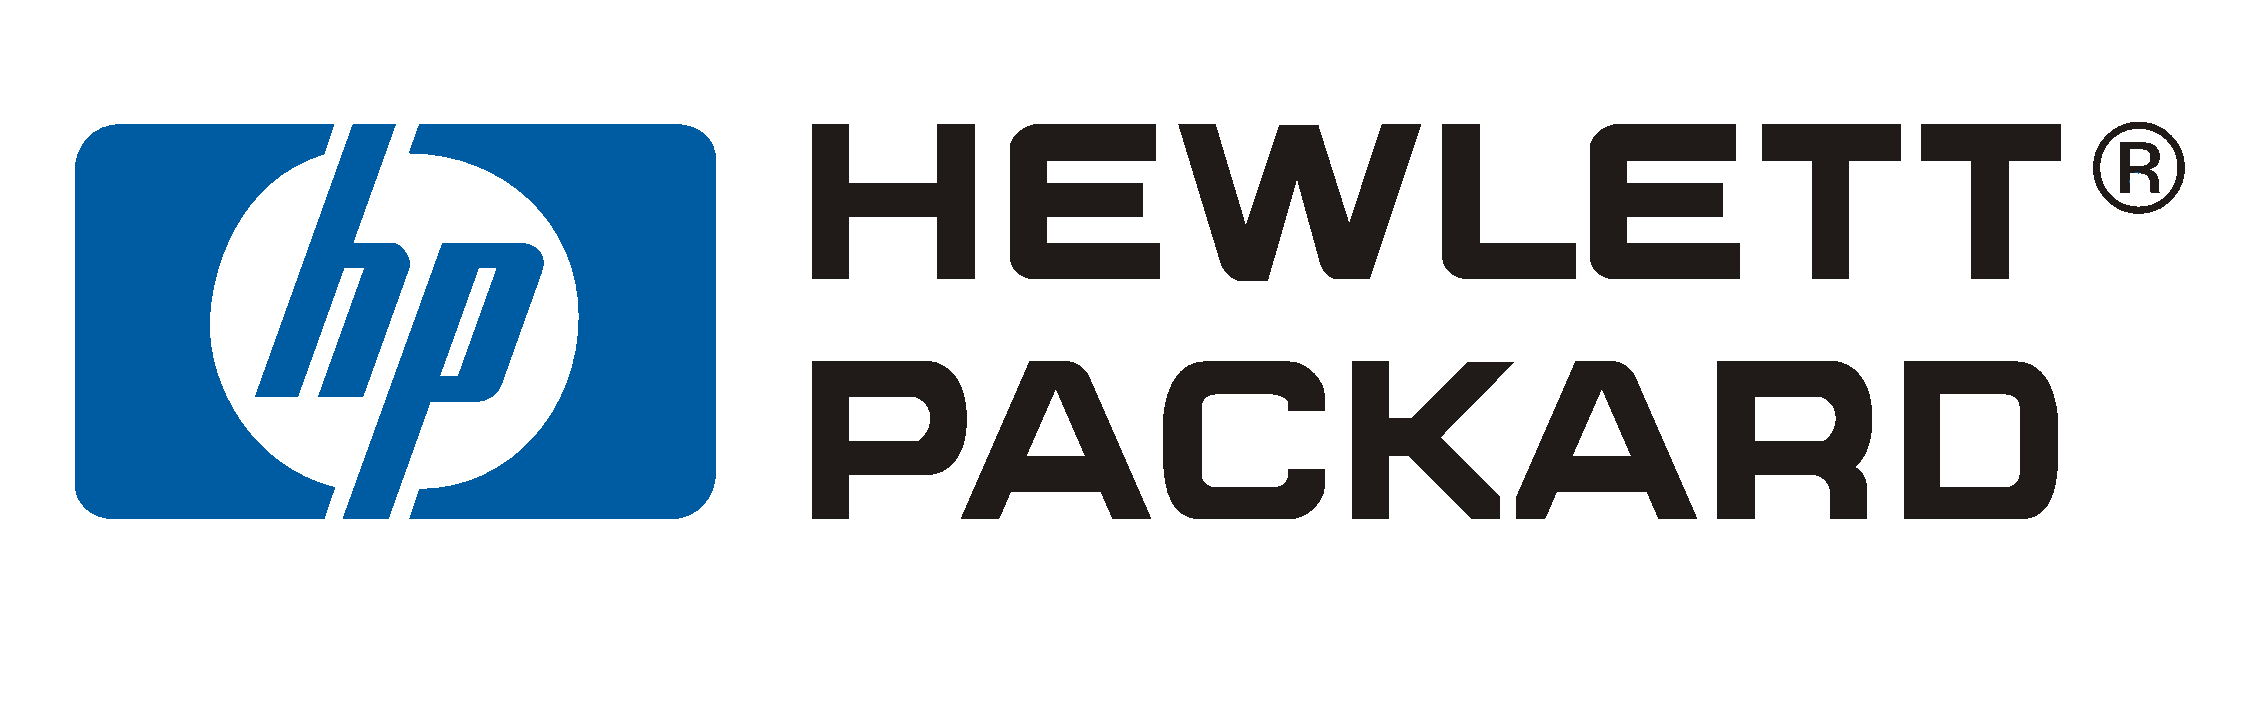 Hewlett-Packard Logo PNG Photos